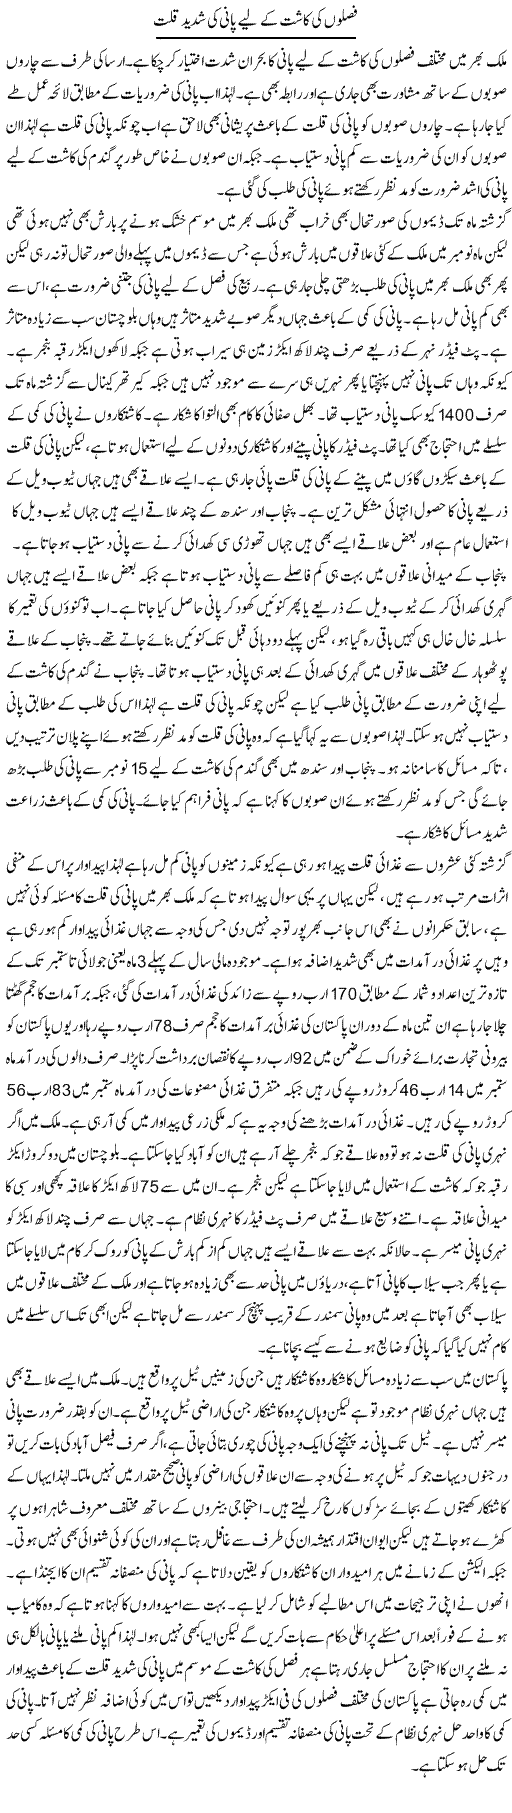 Faslon Ki Kasht Ke Liye Pani Ki Shadeed Qillat | M.I Khalil | Daily Urdu Columns